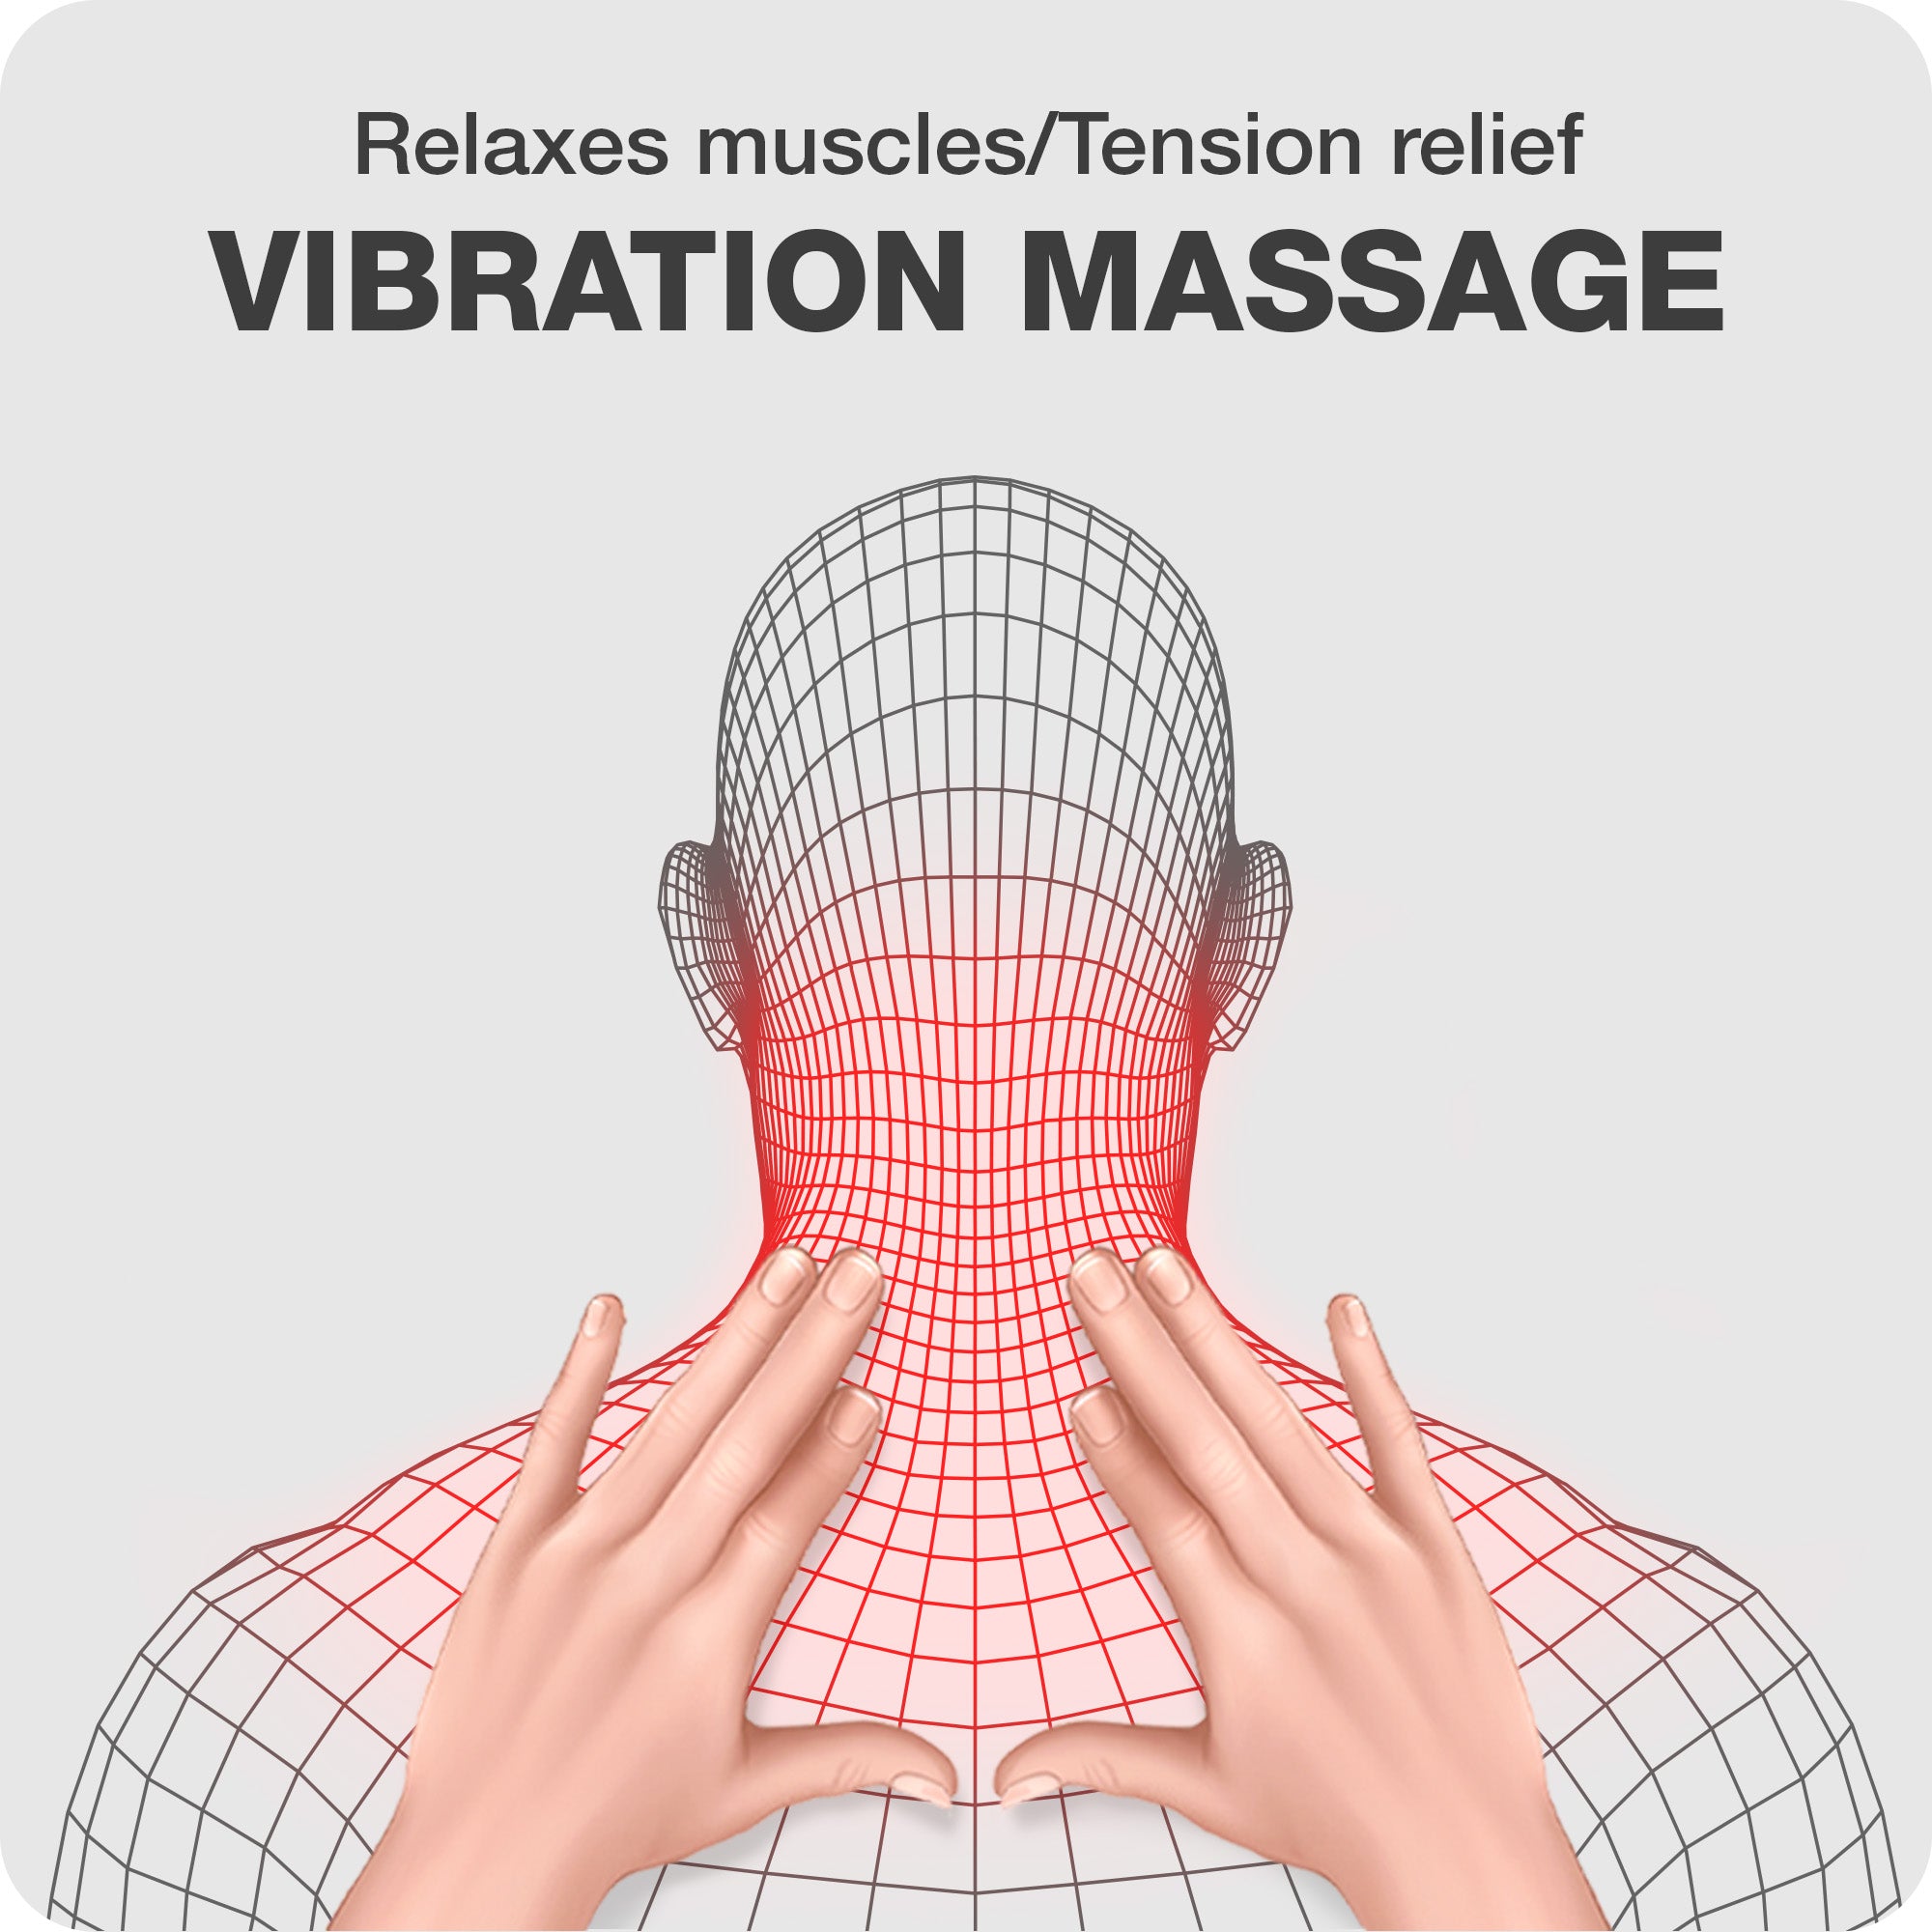 benefits of vibration massage